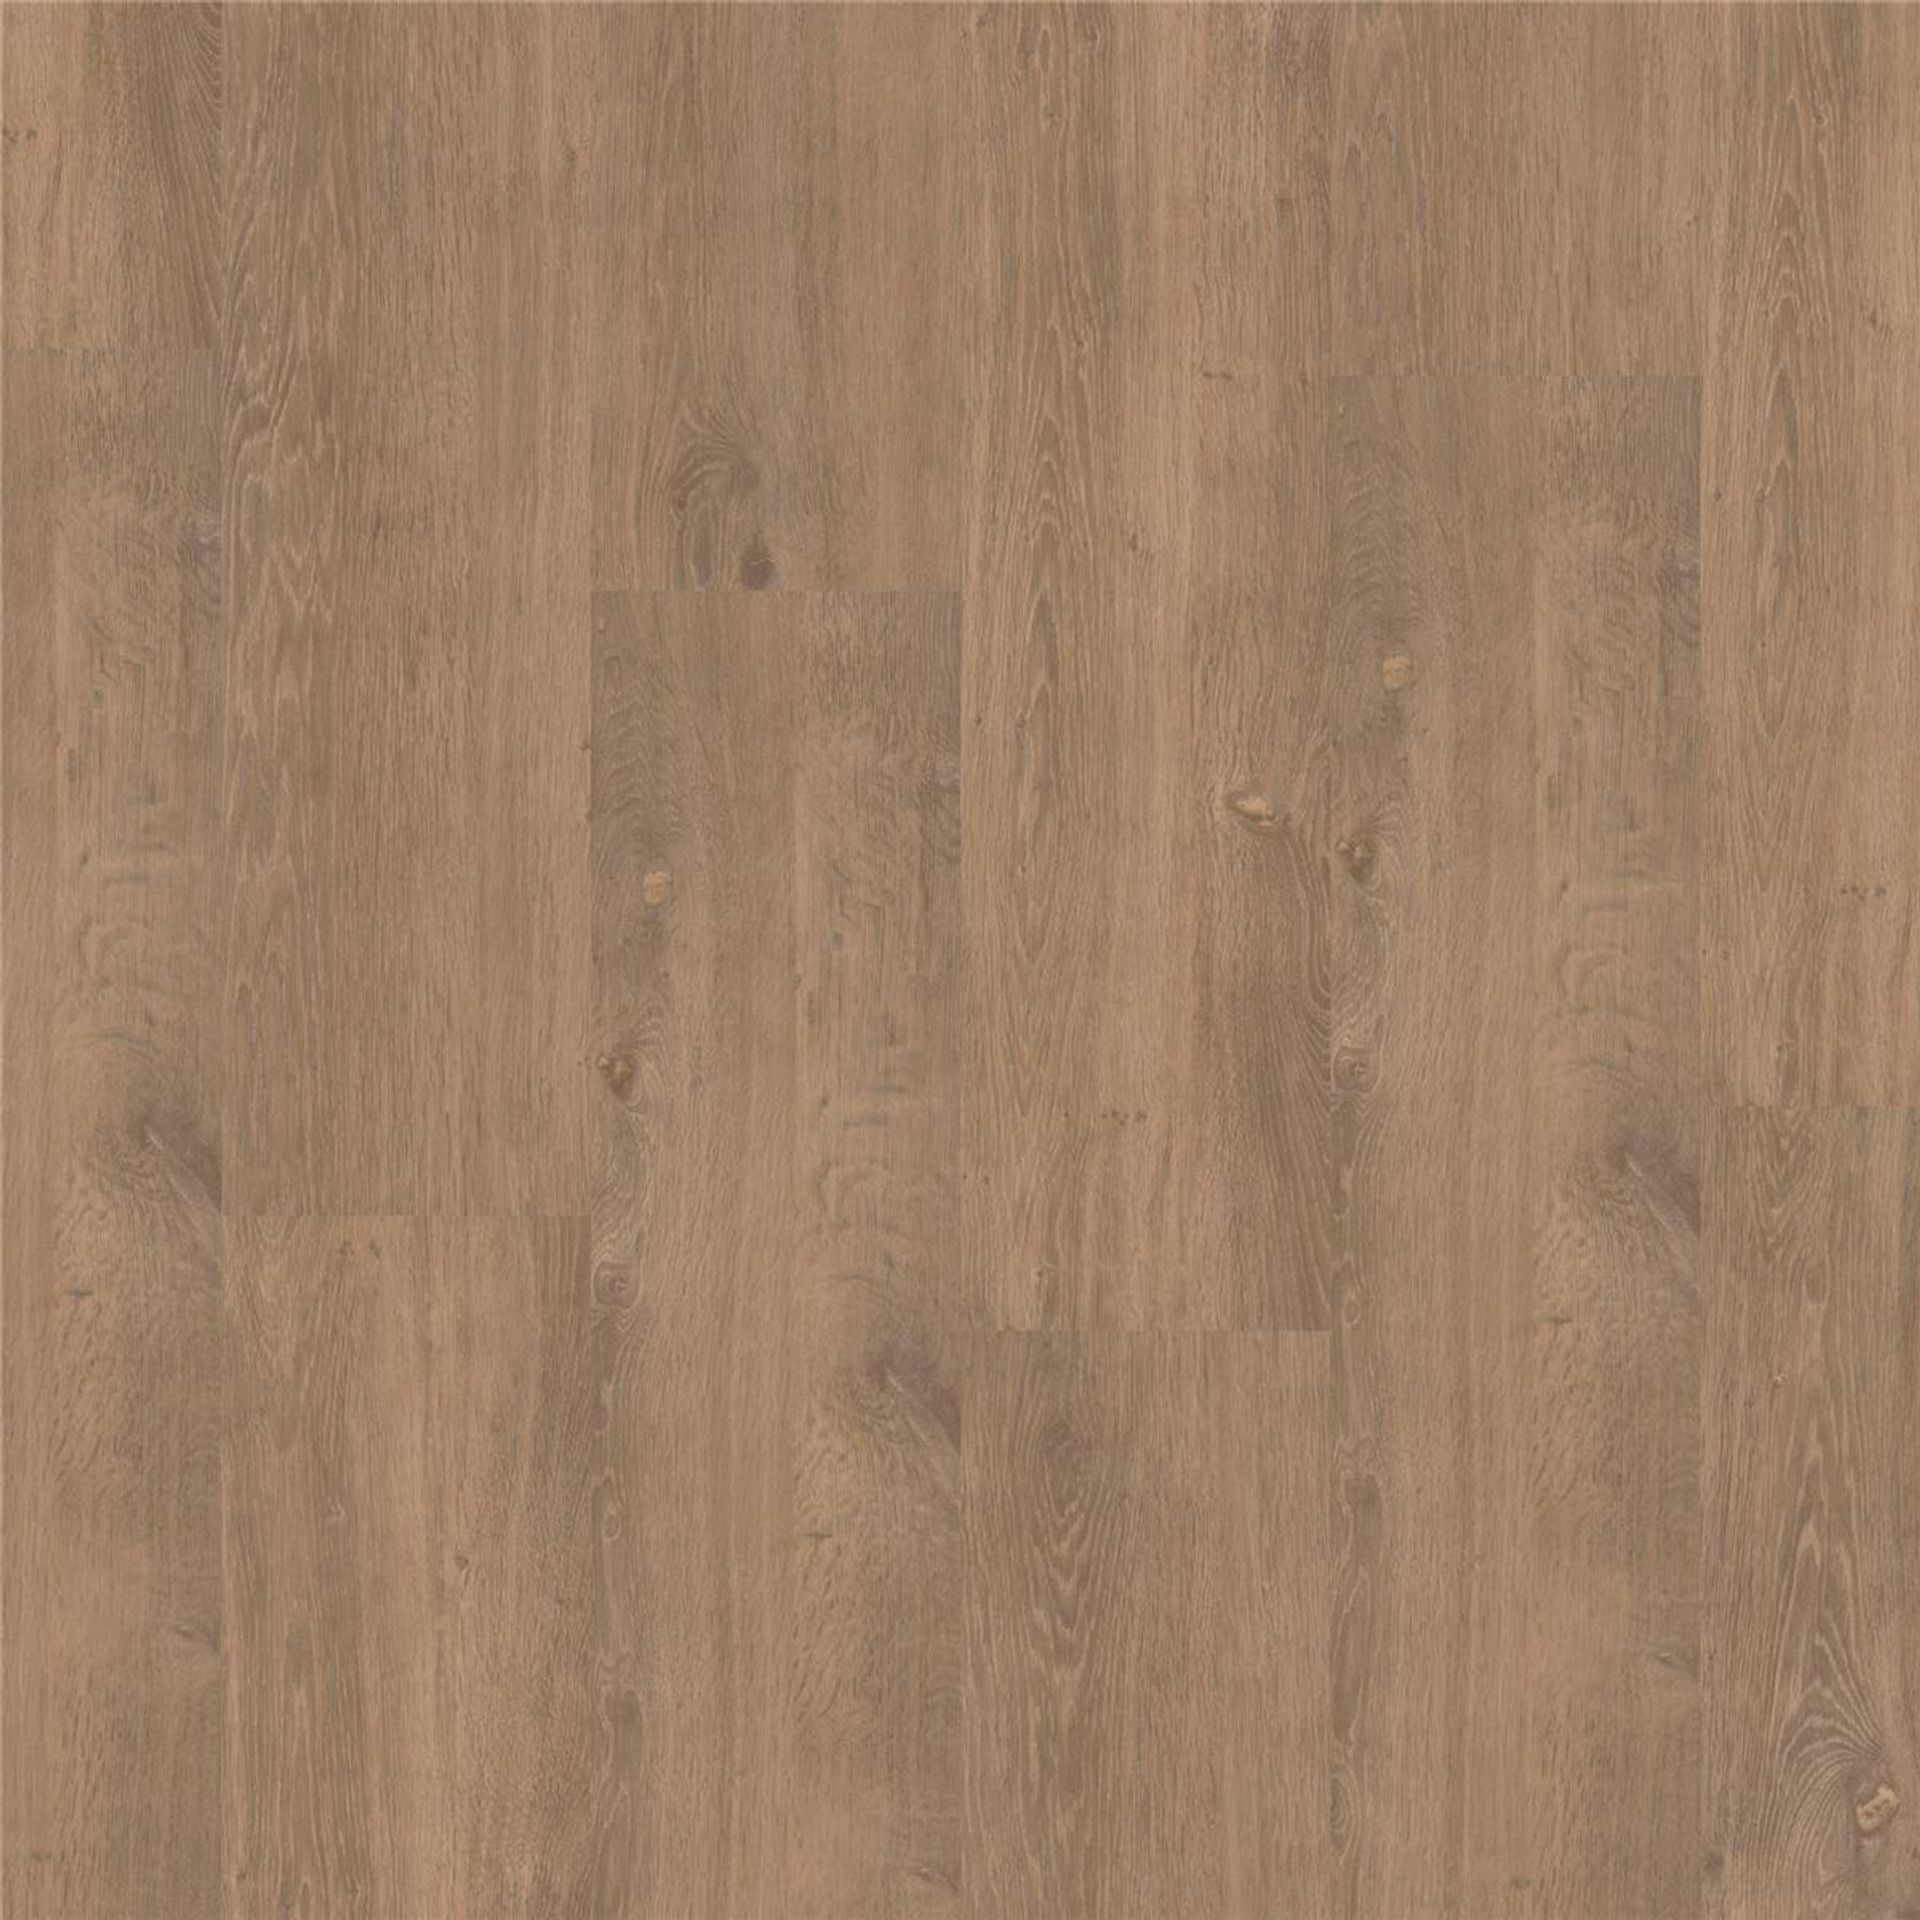 Designboden Limed Oak HONEY Planke 121,9 cm x 22,9 cm - Nutzschichtdicke 0,55 mm